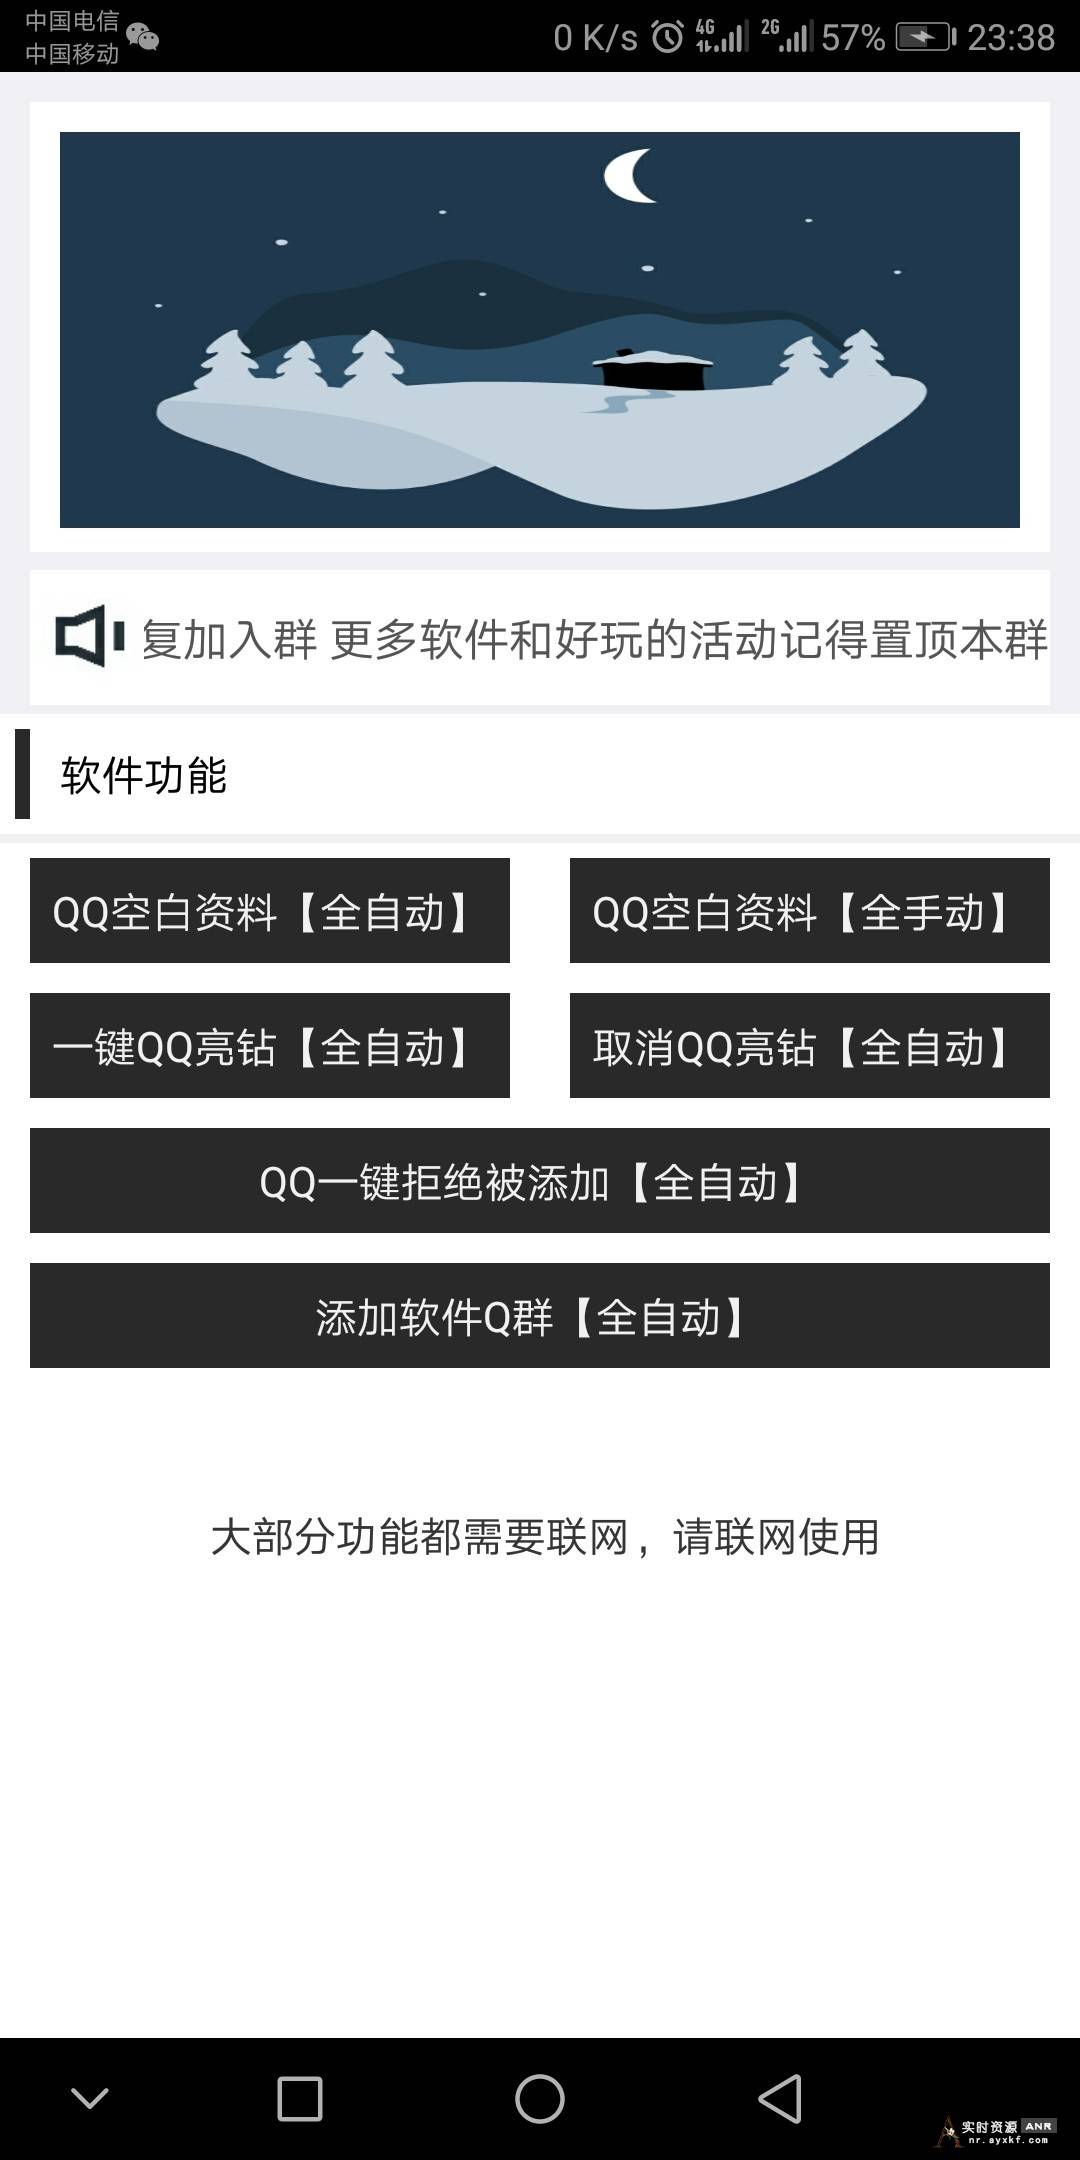 QQ最新多功能装逼助手 网络资源 图1张